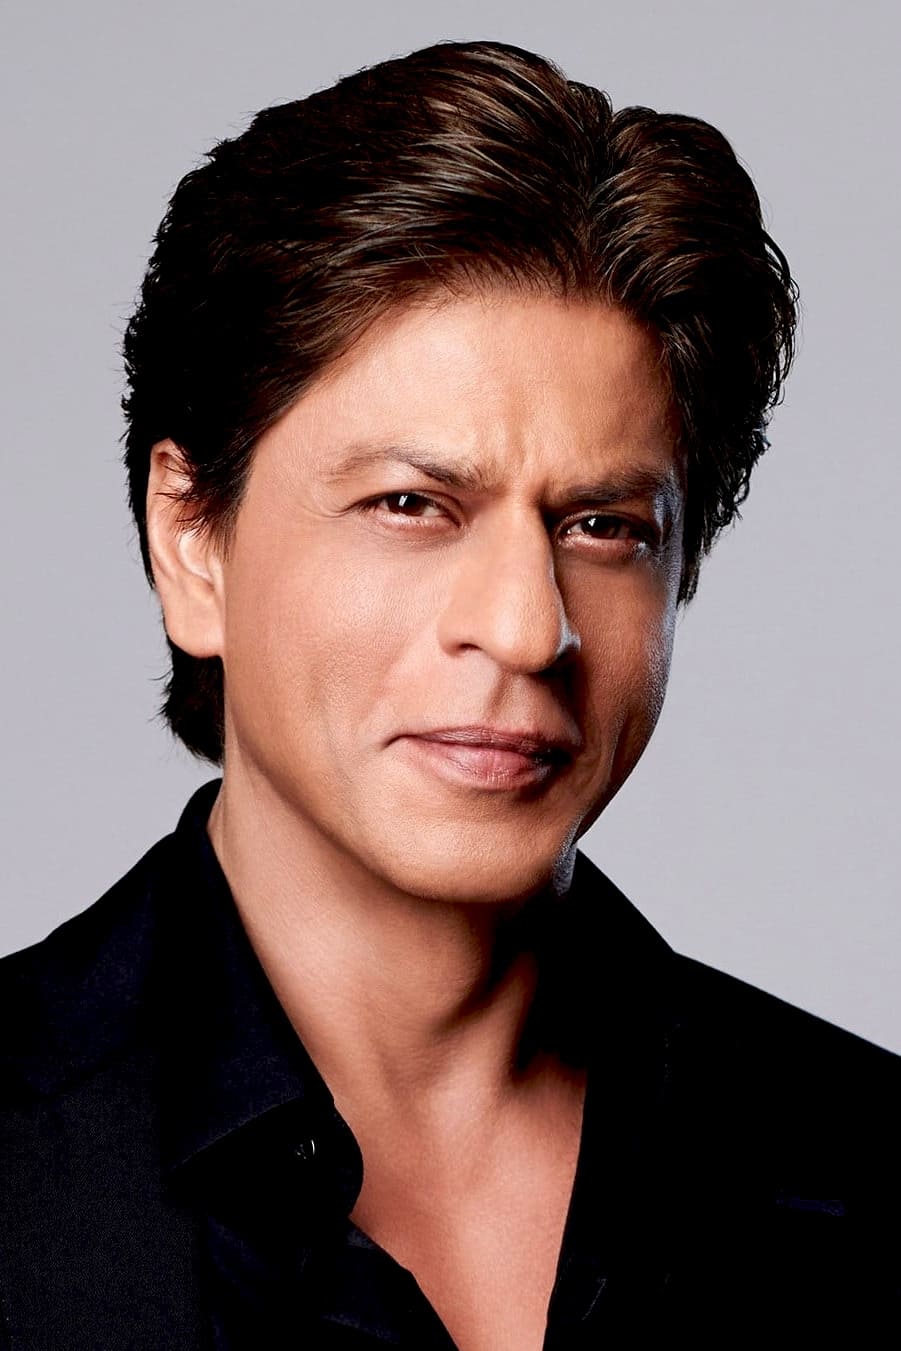 Shah Rukh Khan image